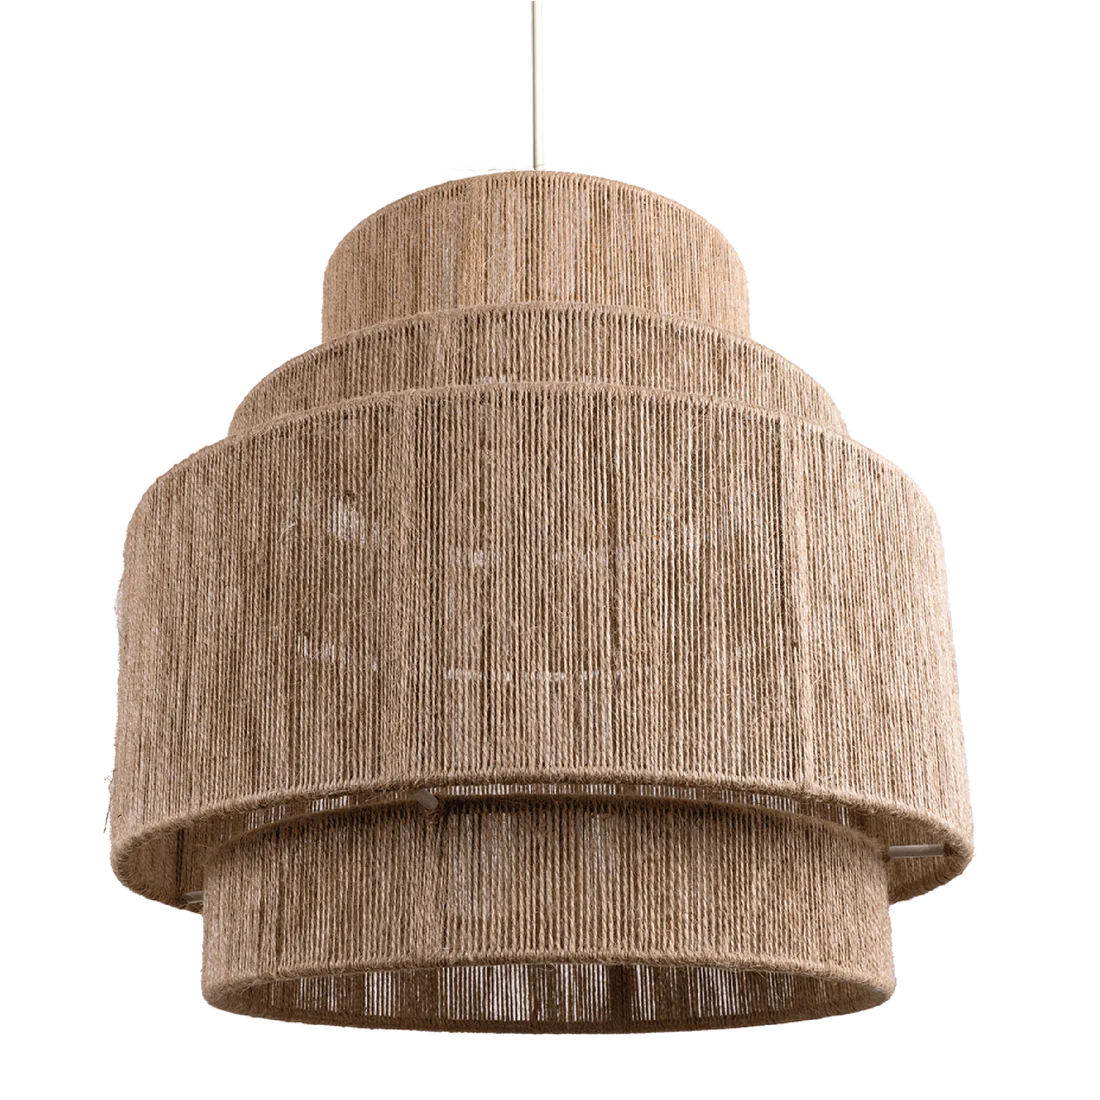 Bamboo Hanging lamp for Living Room | Rattan Pendant light | Cane ceiling light - Eenakshi - Akway